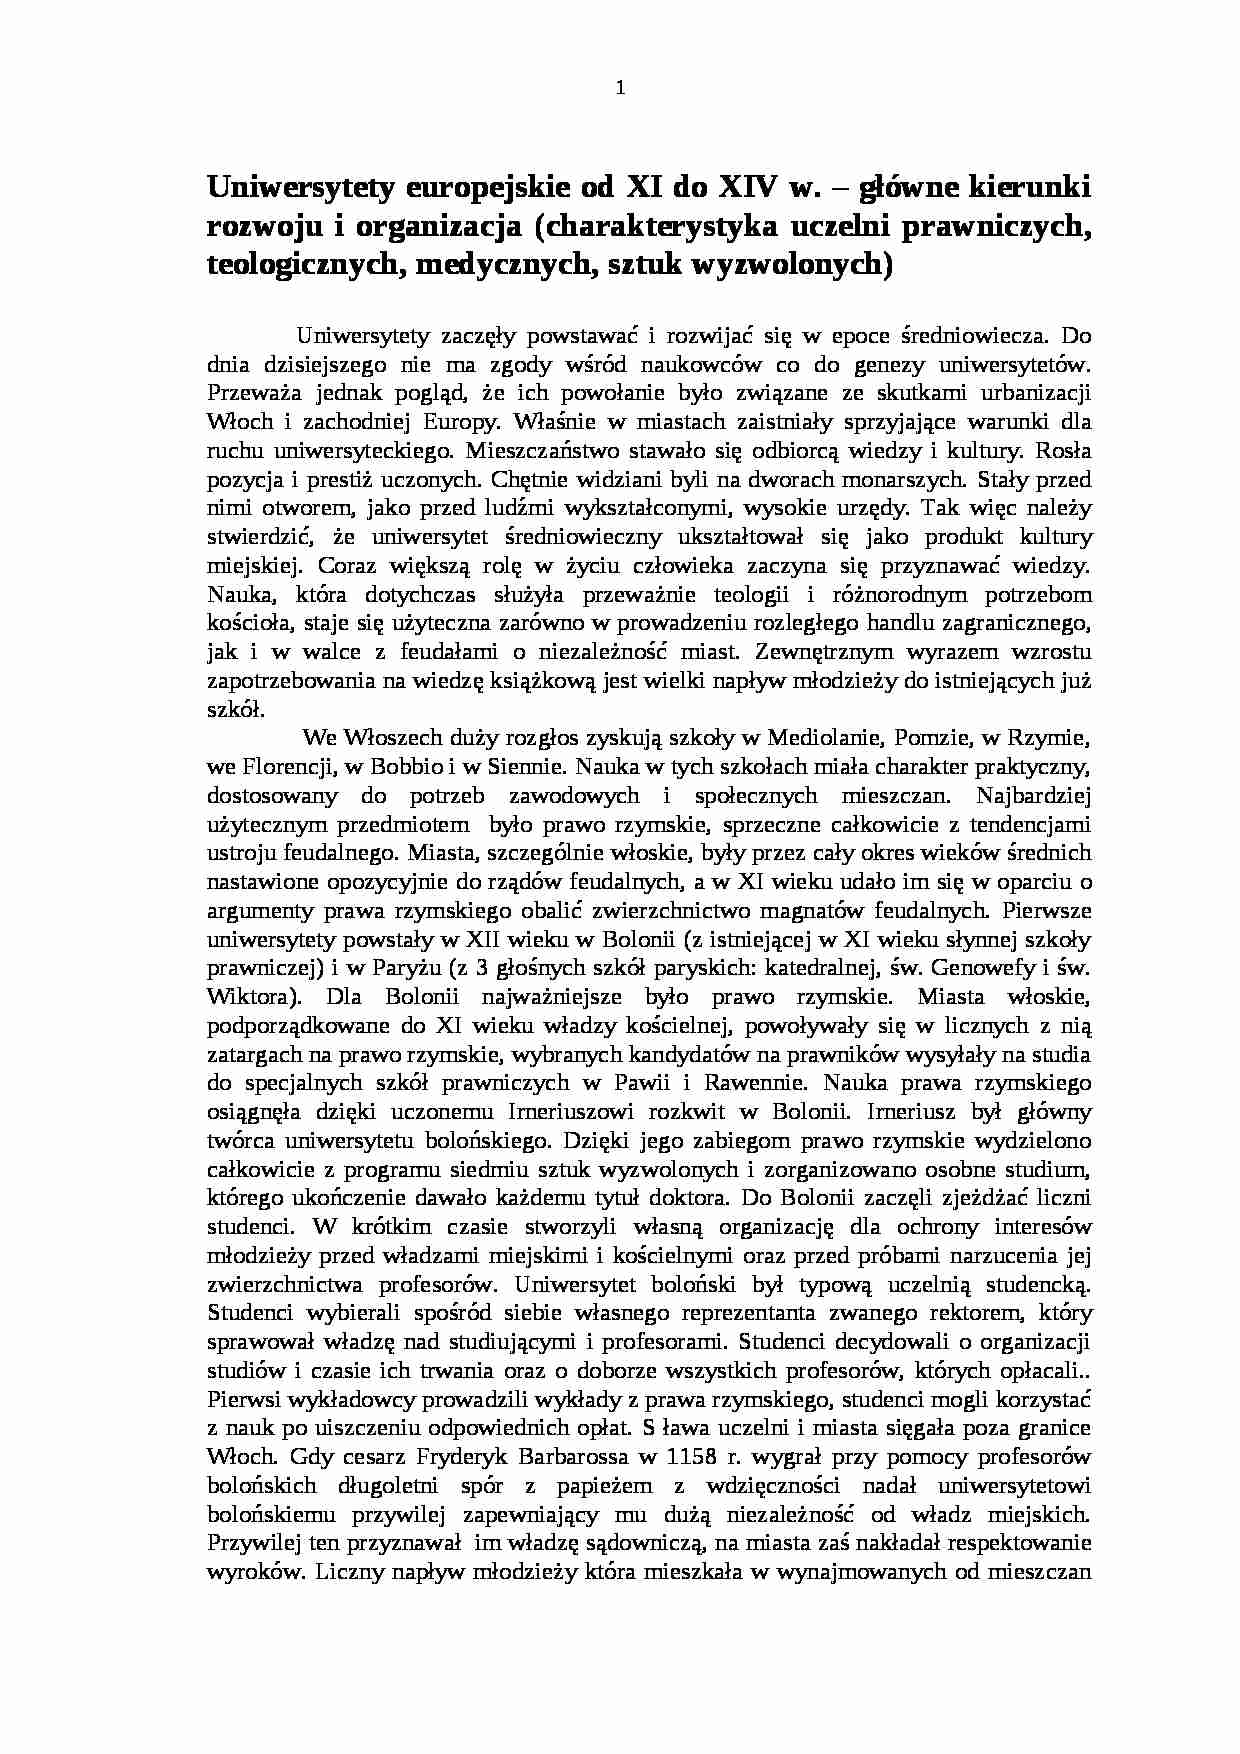 Uniwersytety europejskie od XI do XIV w- pedagogika - strona 1